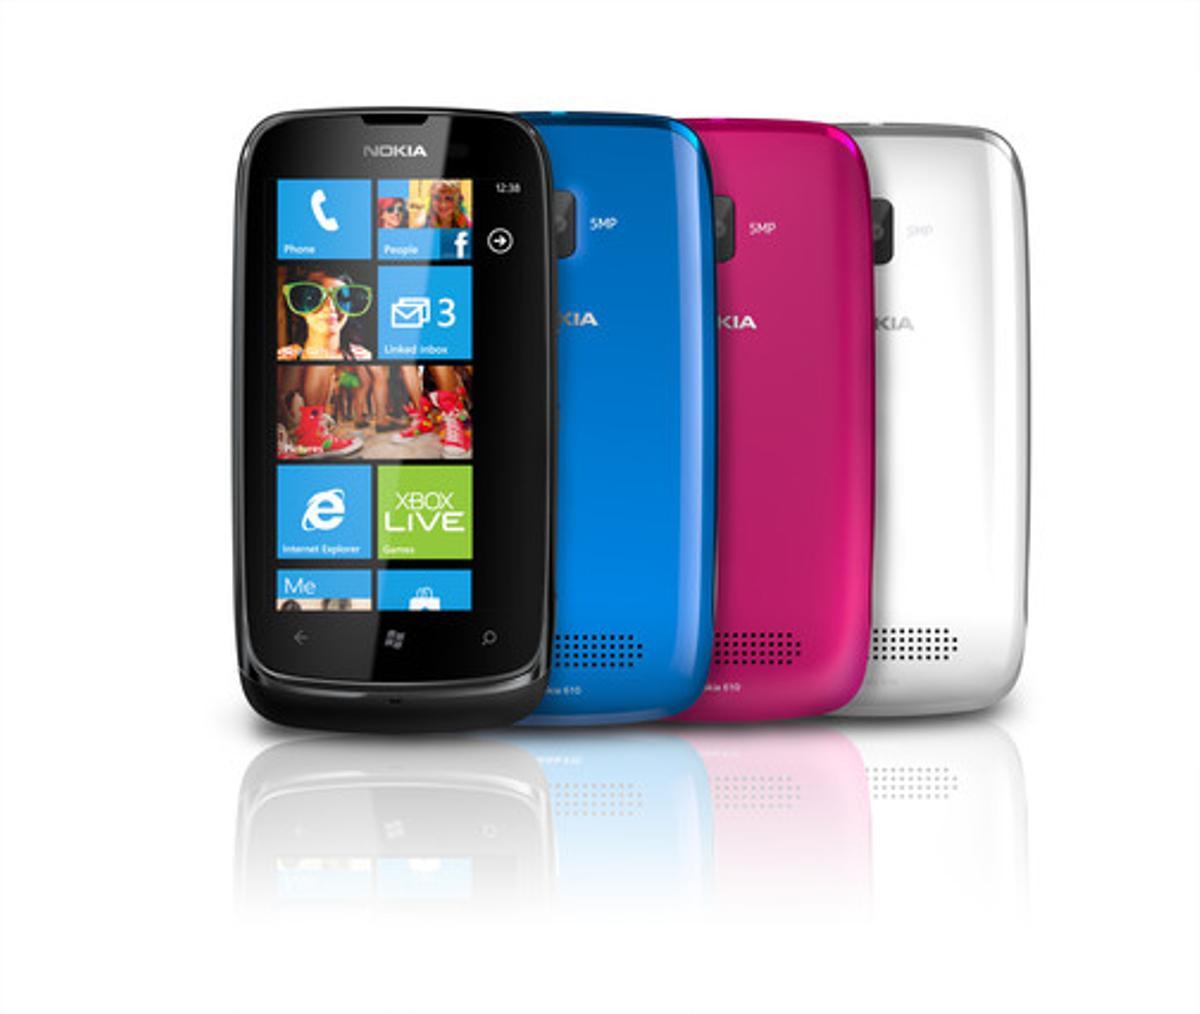 Nokia Lumia 610, el Windows Phone más asequible y destinado a un público joven. Lleva cámara de cinco megapíxeles, accesos directos a redes sociales y carcasas de colores.